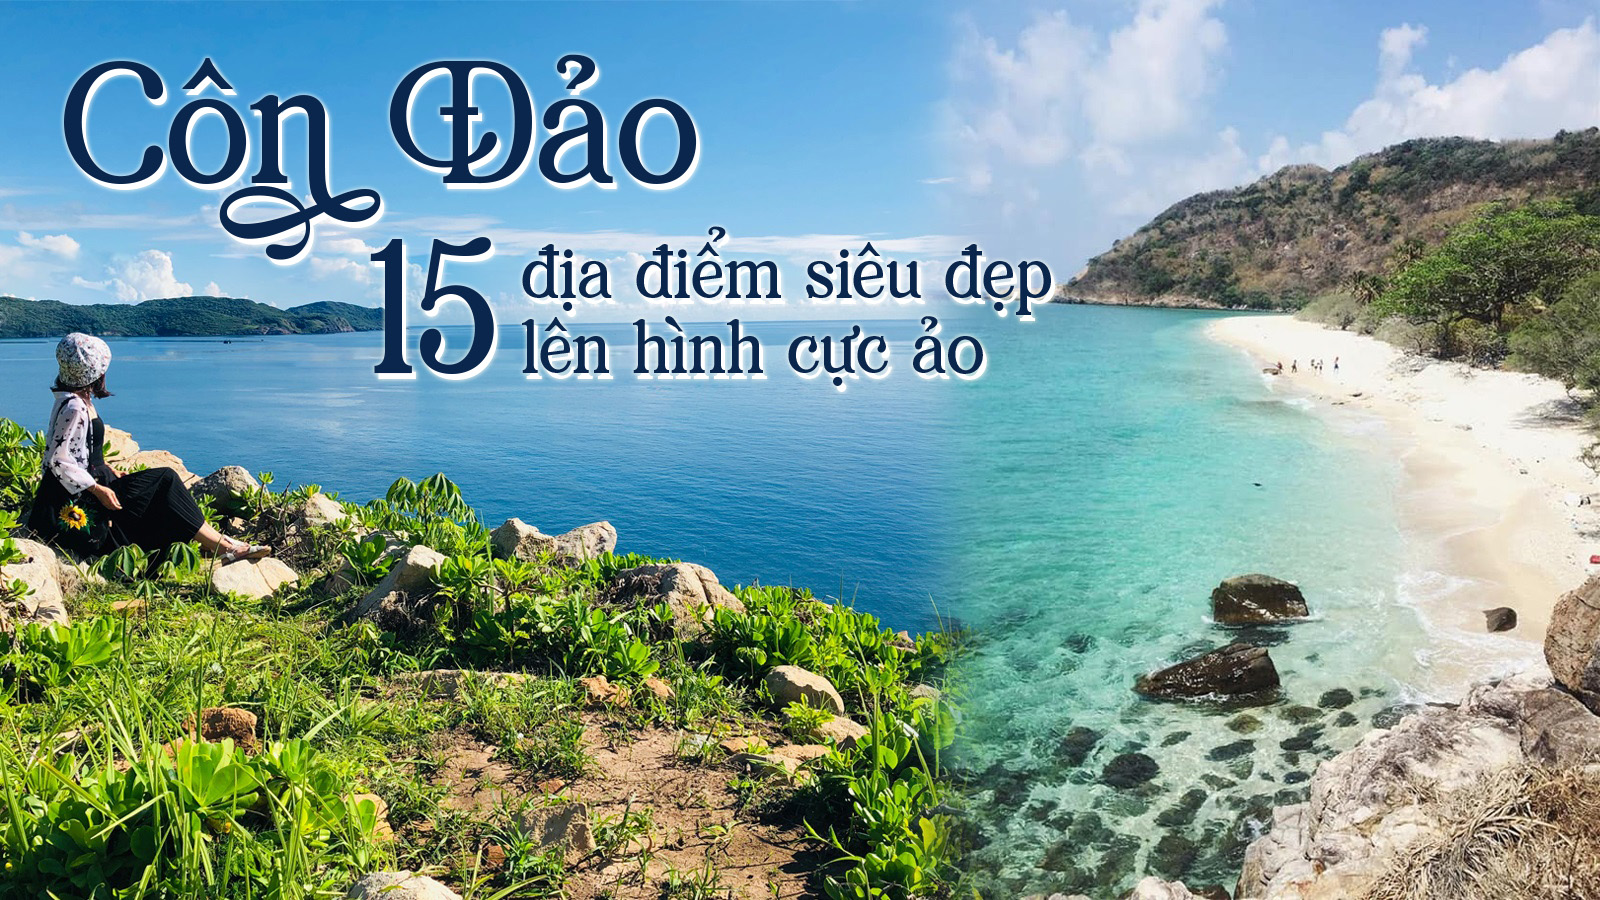 Điểm danh 15 địa điểm siêu đẹp ở Côn Đảo lên hình cực ảo - saigonseatravel.com